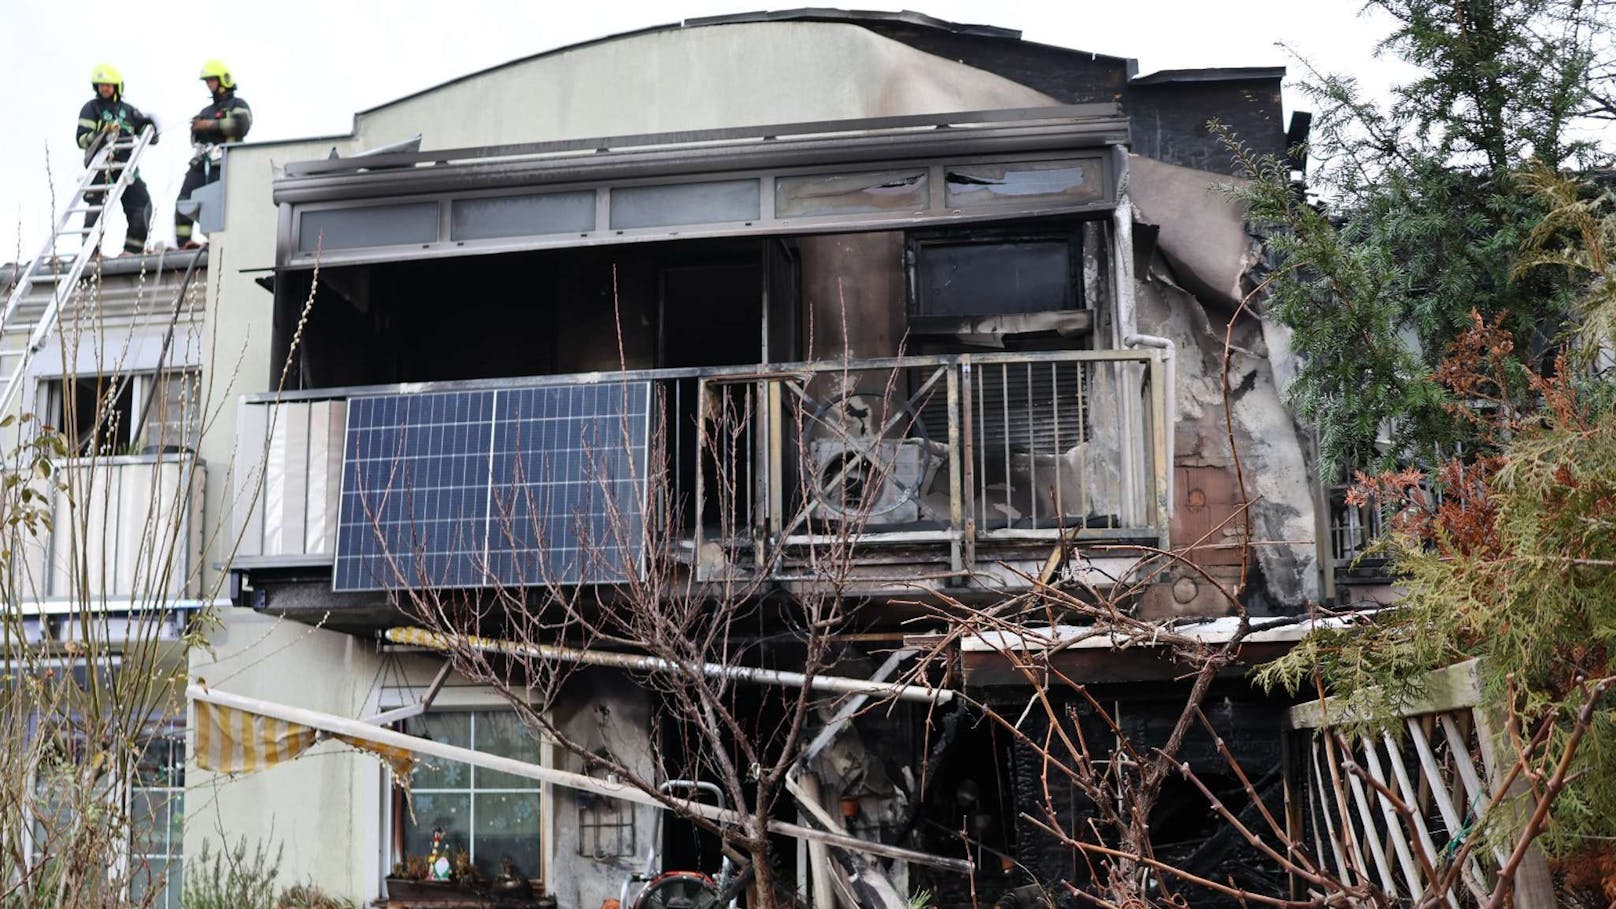 Friedenslicht löste Großbrand in Wohnhaus aus